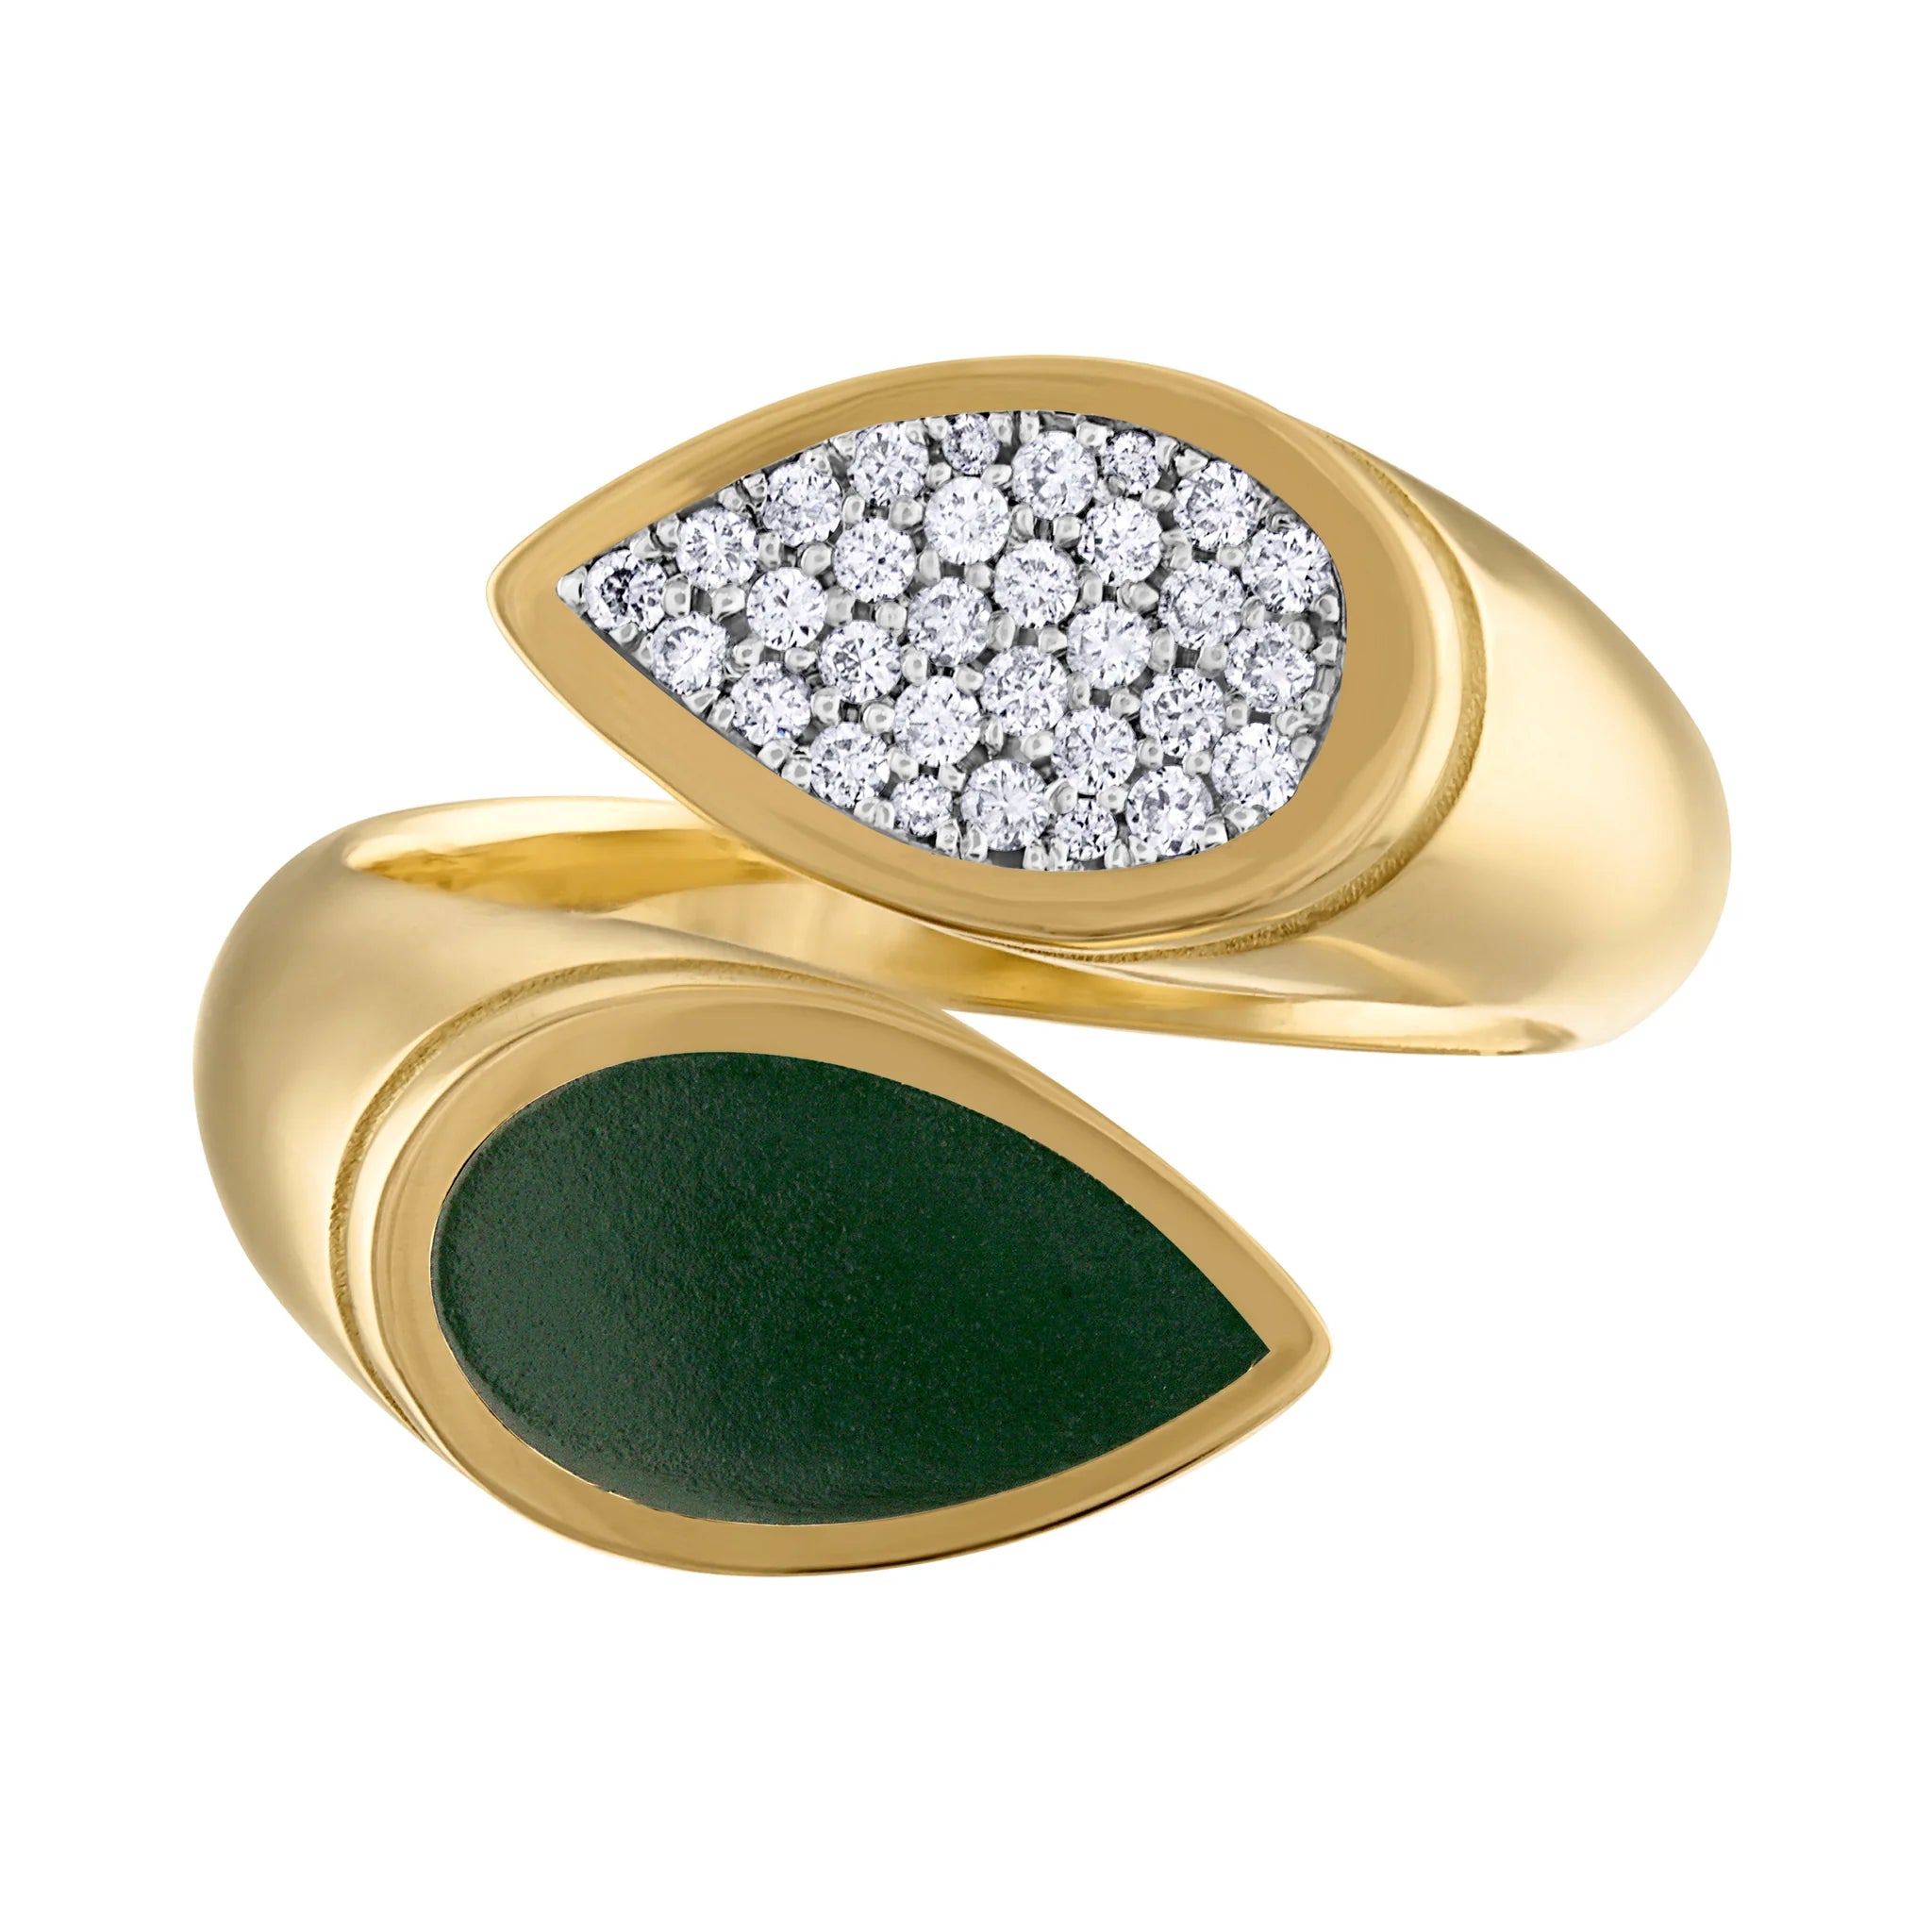 Moi et Toi Pave Diamond and Enamel Ring